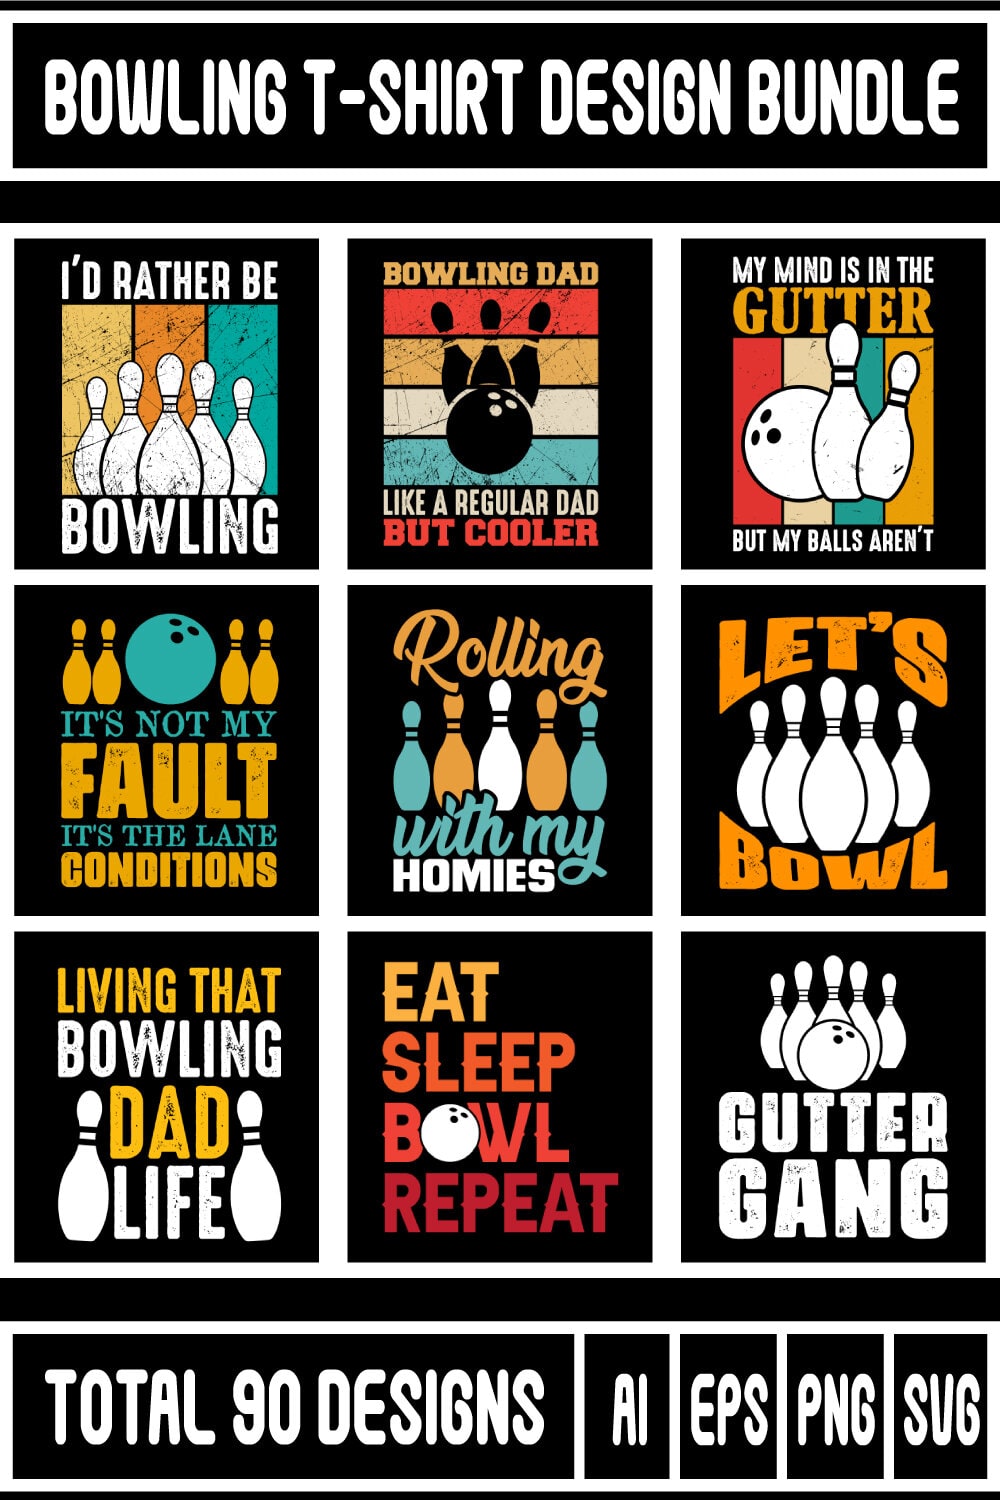 Bowling T-shirt Design Bundle pinterest preview image.